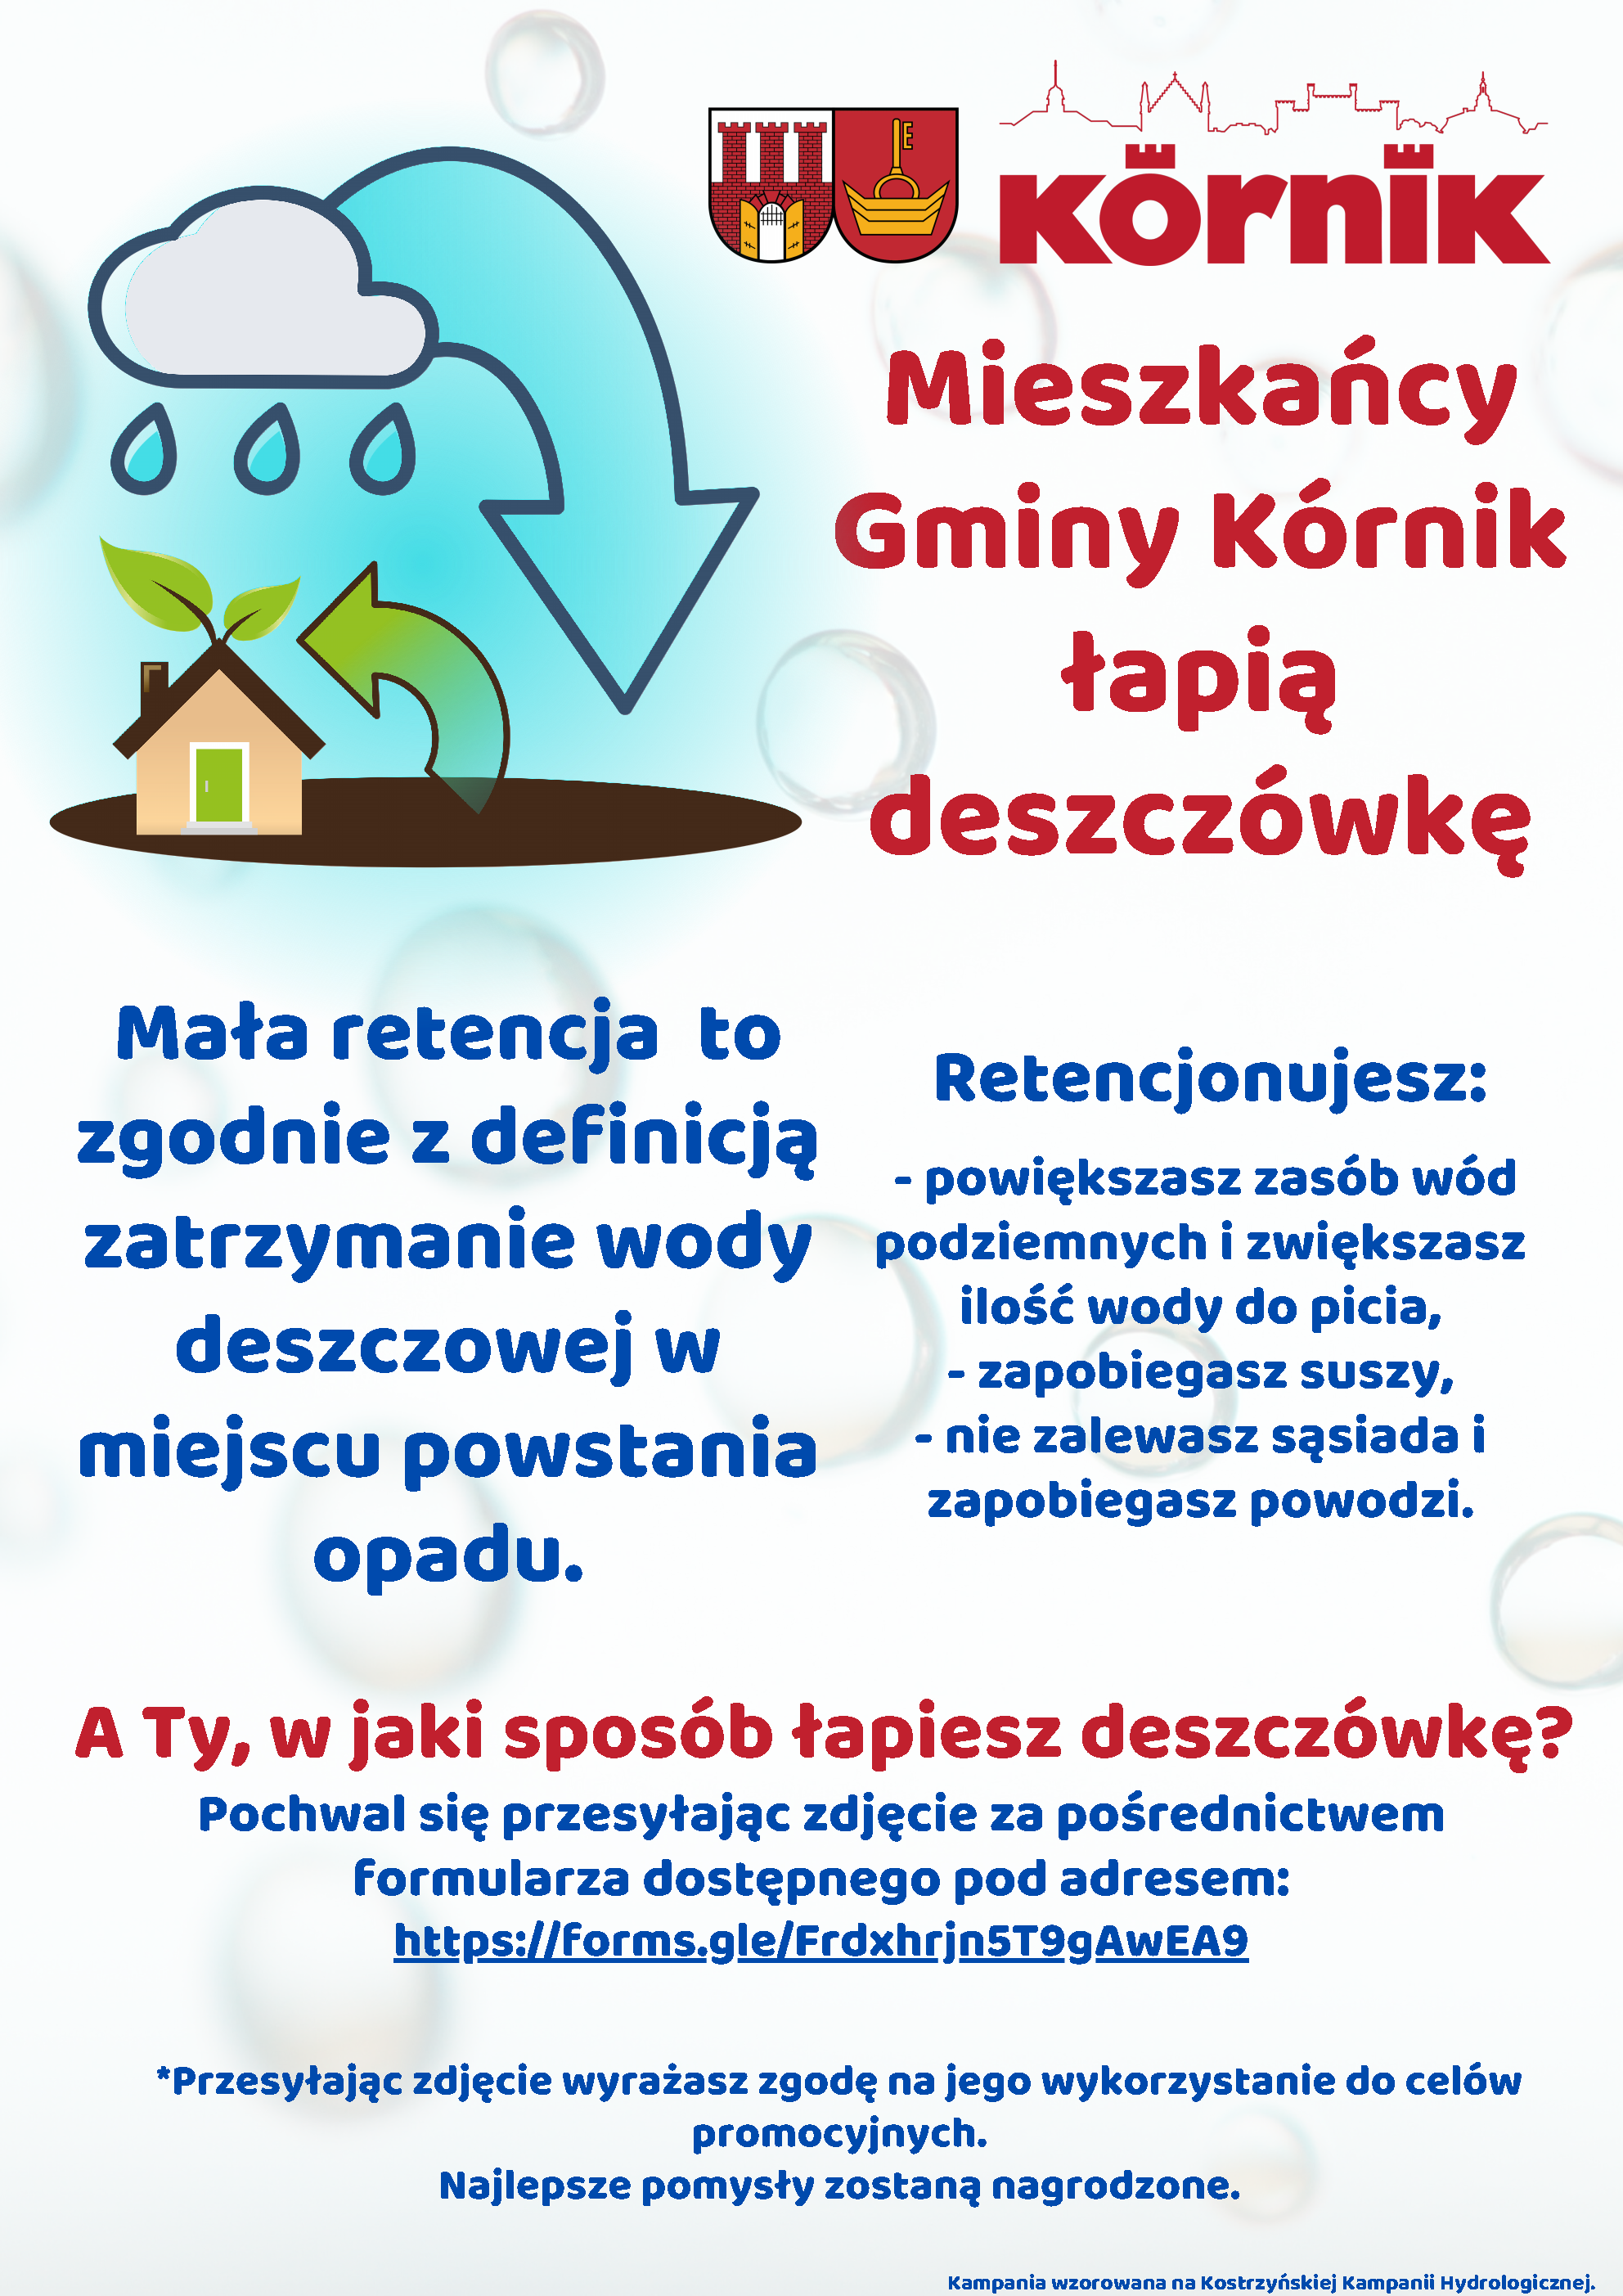 Mieszkańcy gminy Kórnik łapią deszczówkę